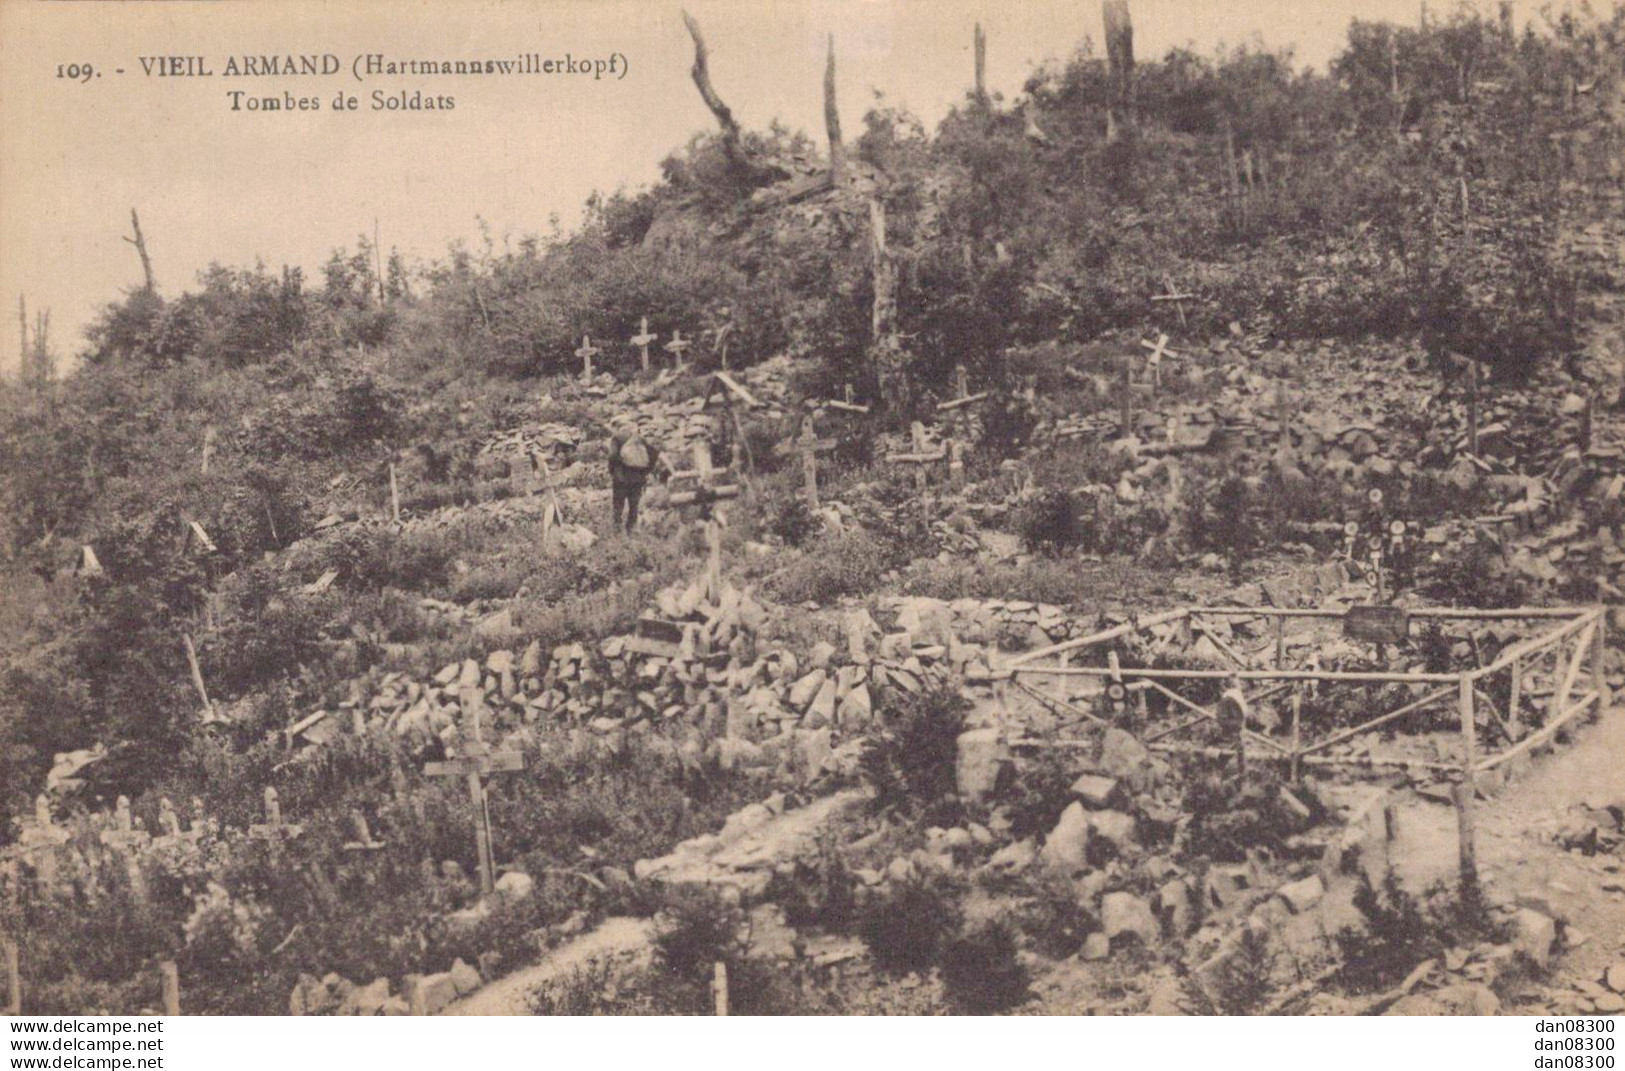 67 VIEIL ARMAND TOMBES DE SOLDATS - Oorlogsbegraafplaatsen